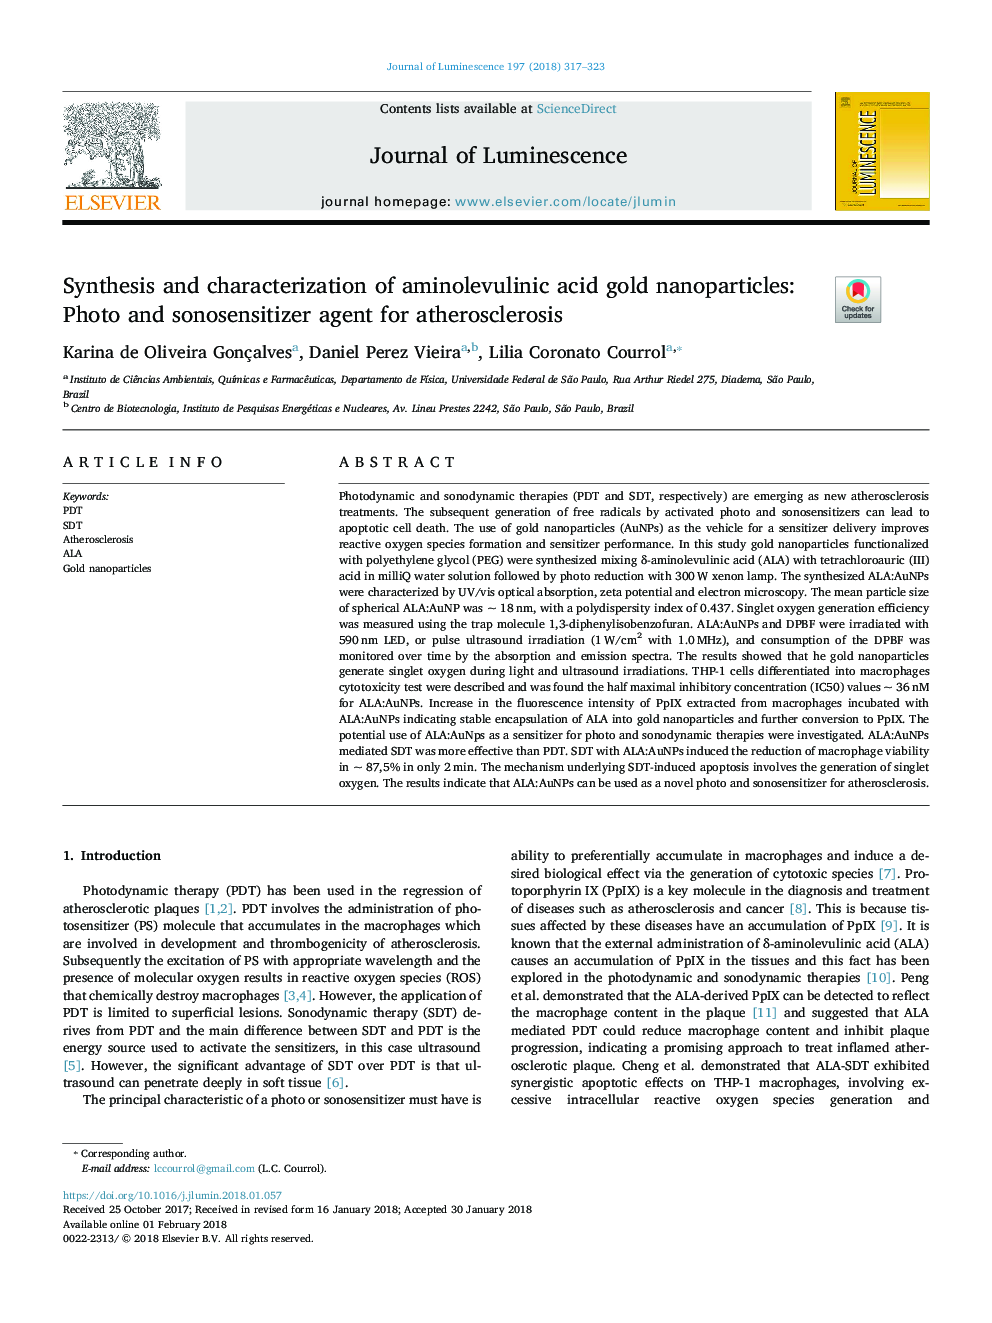 سنتز و مشخص کردن نانوذرات طلای آمینولولولینیک اسید: عامل عکس و سونوسانسیتی ساز برای آترواسکلروز 